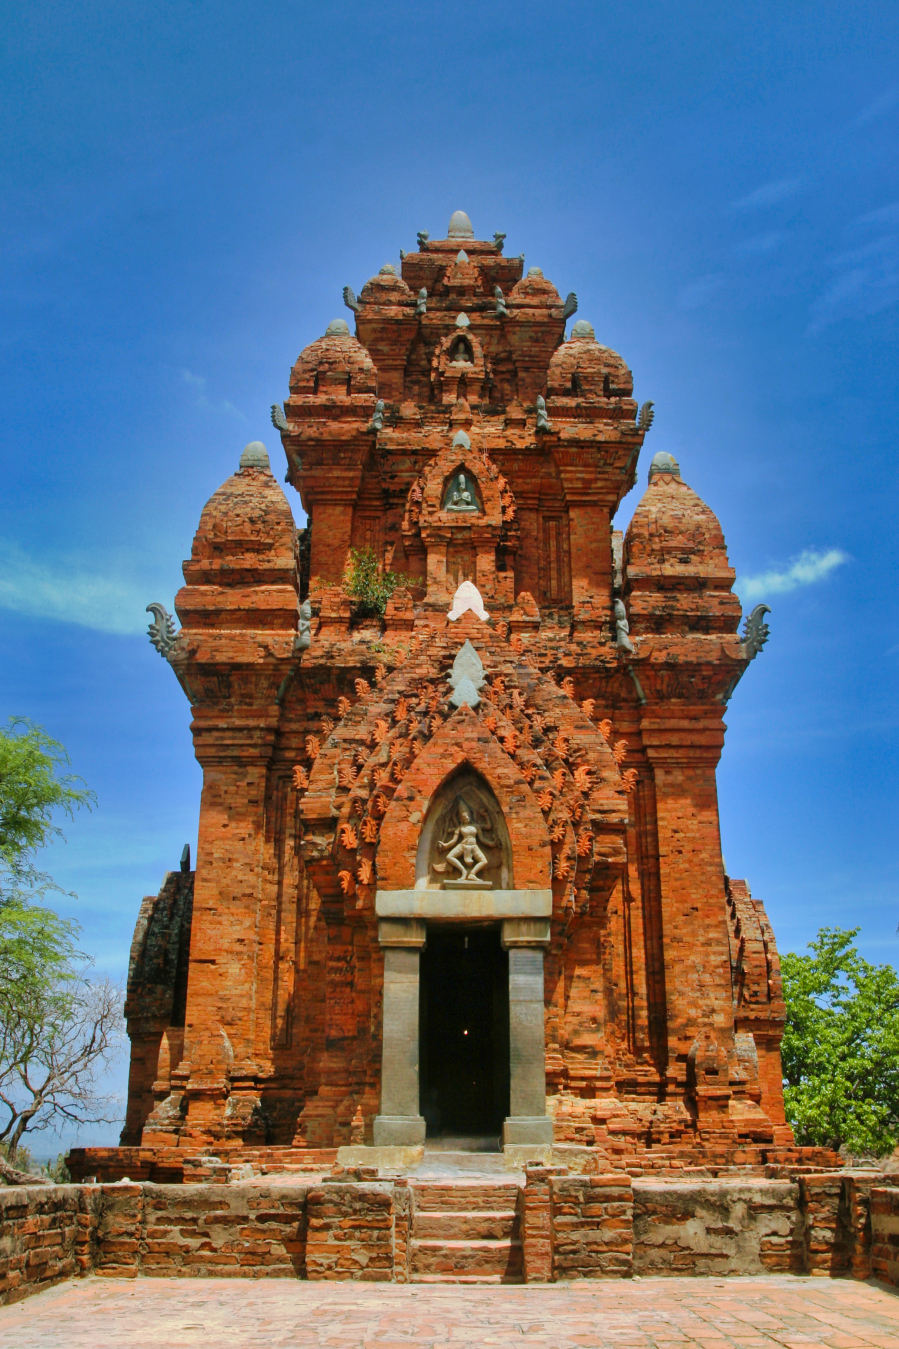 Khám phá Po Klaung Garai - cụm tháp Chăm đặc biệt ở Ninh Thuận - 4